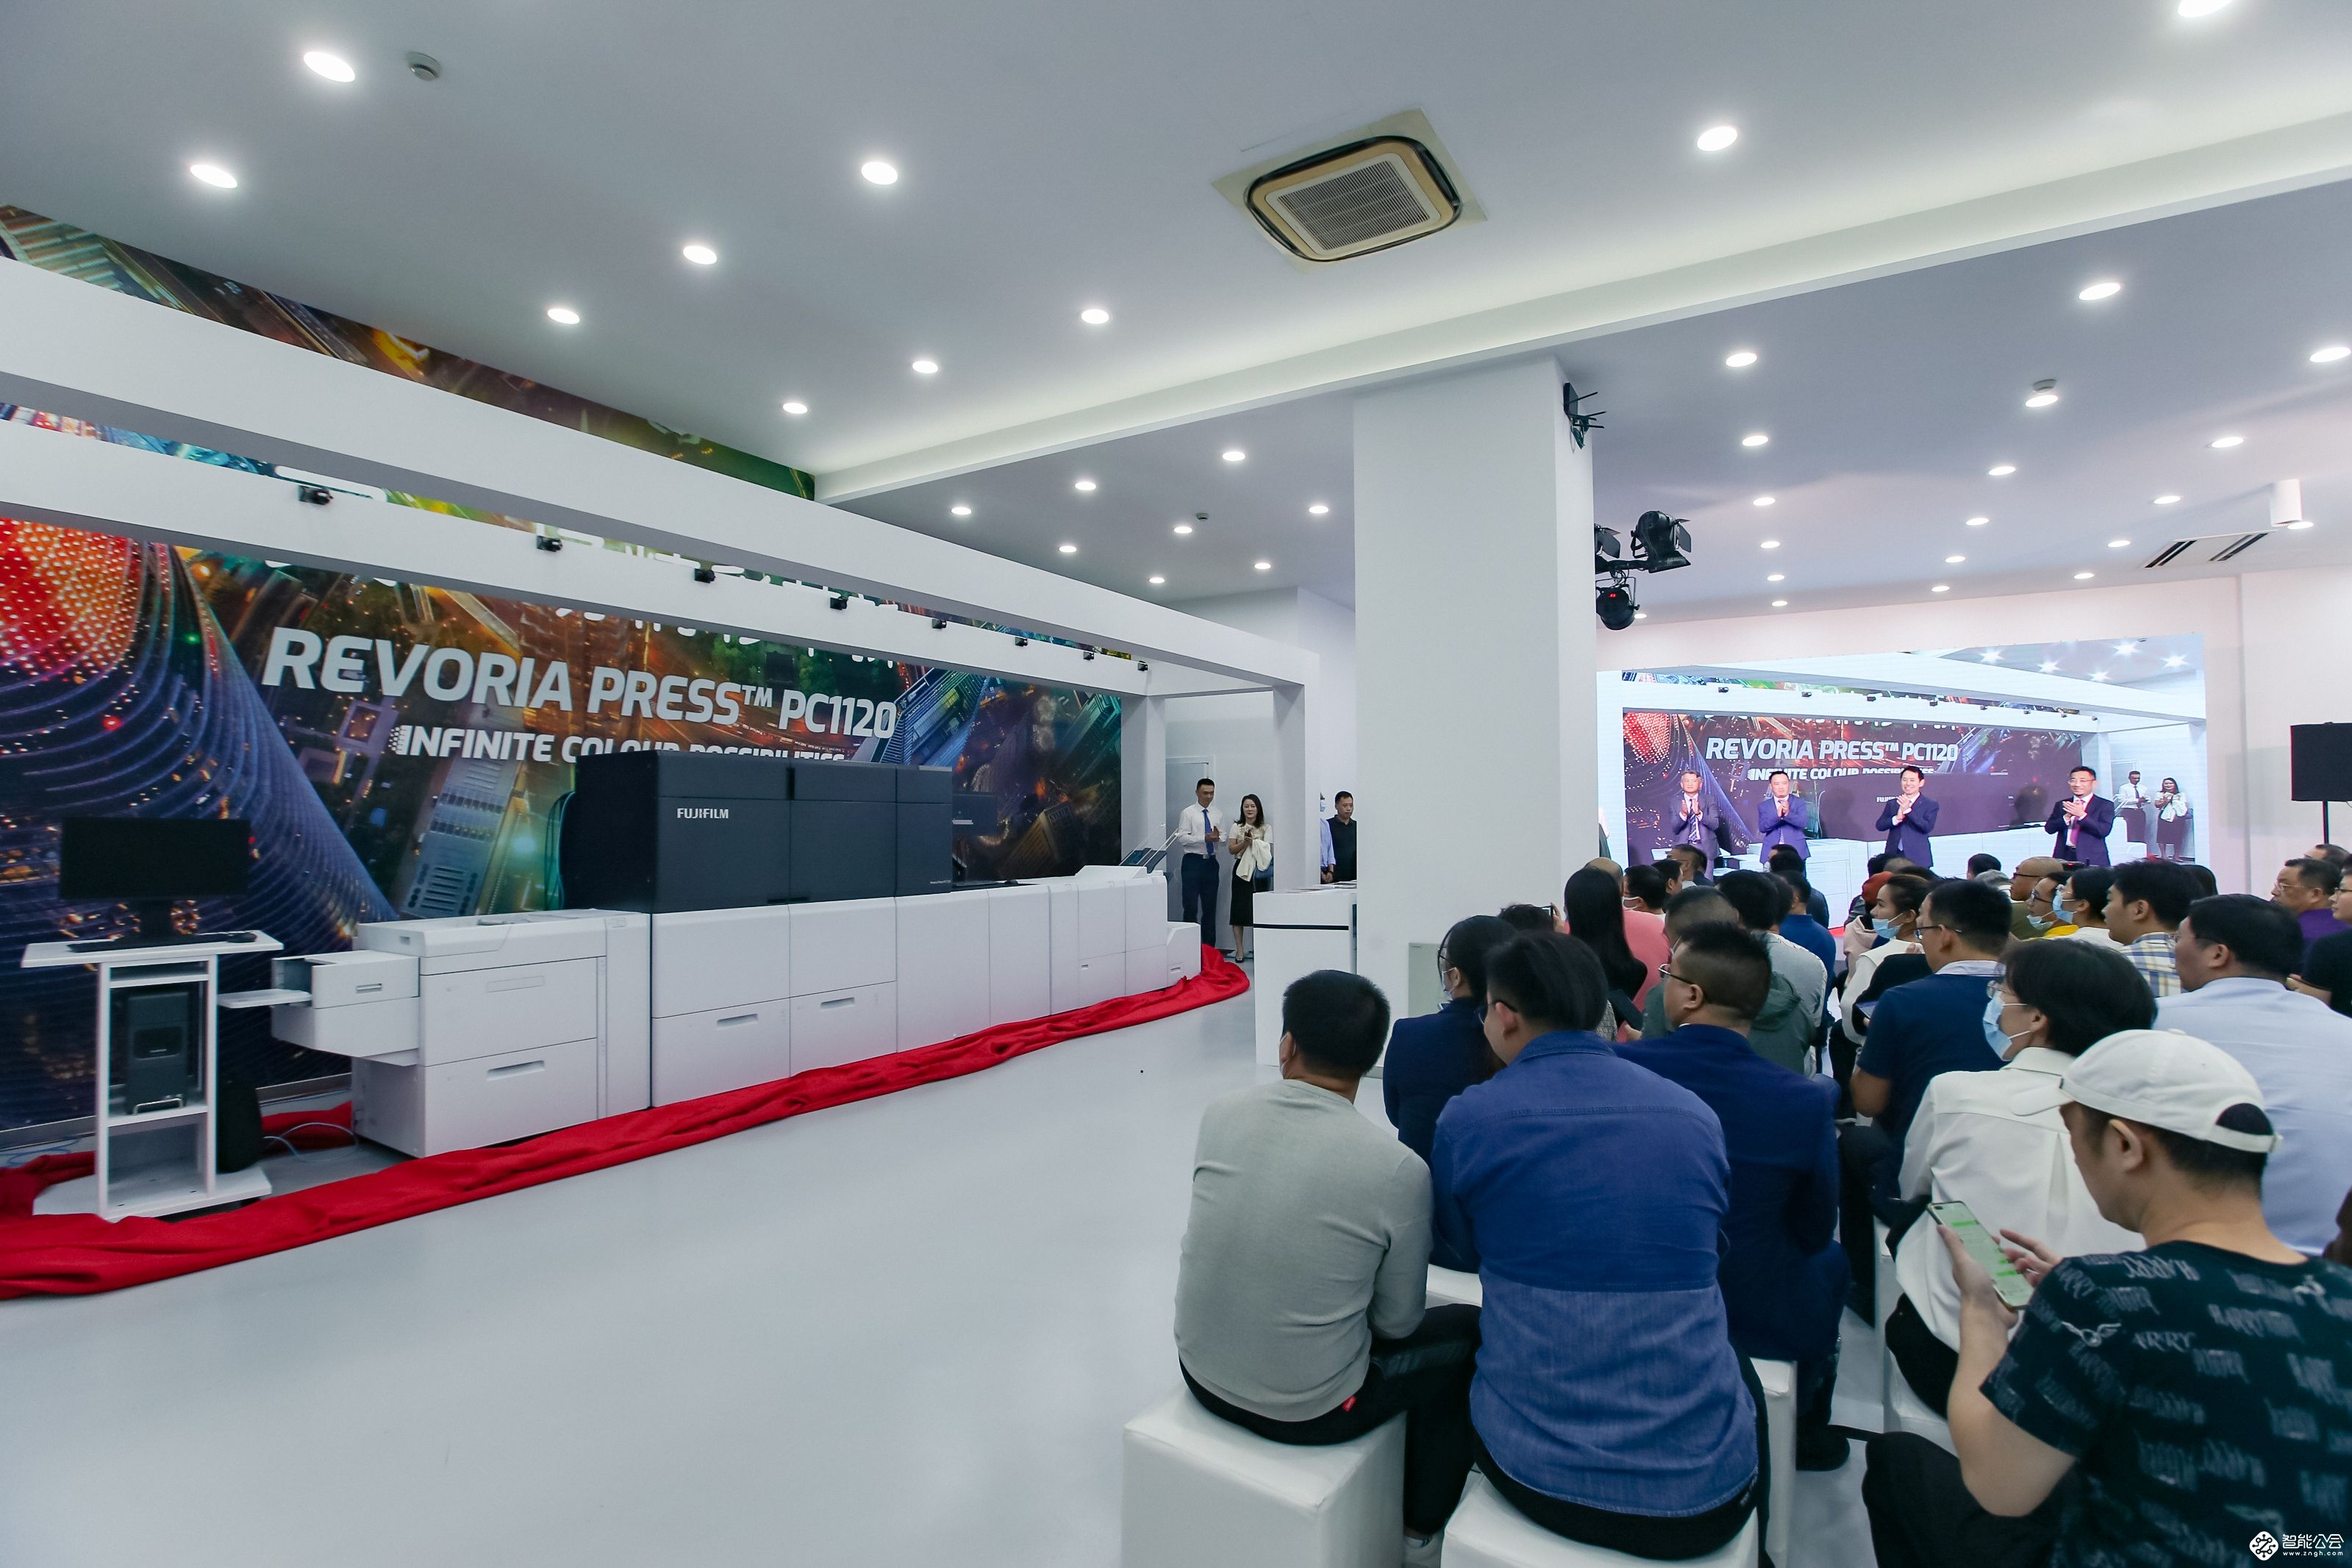 富士胶片商业创新（中国）举办新一代图灵Revoria PressTM PC1120发布仪式 智能公会